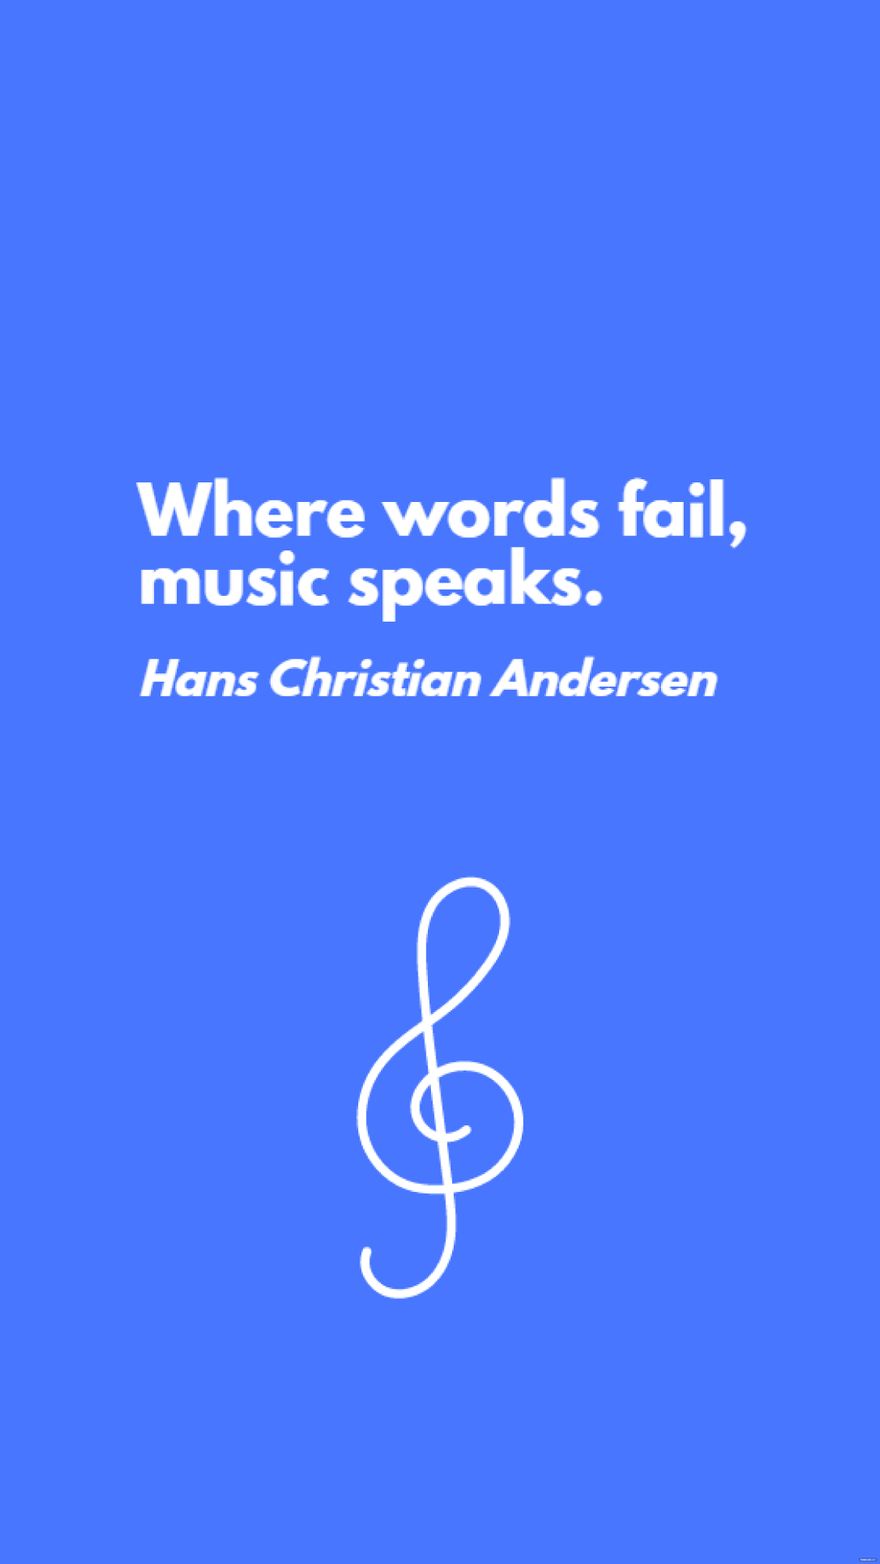 Free Hans Christian Andersen - Where words fail, music speaks. in JPG